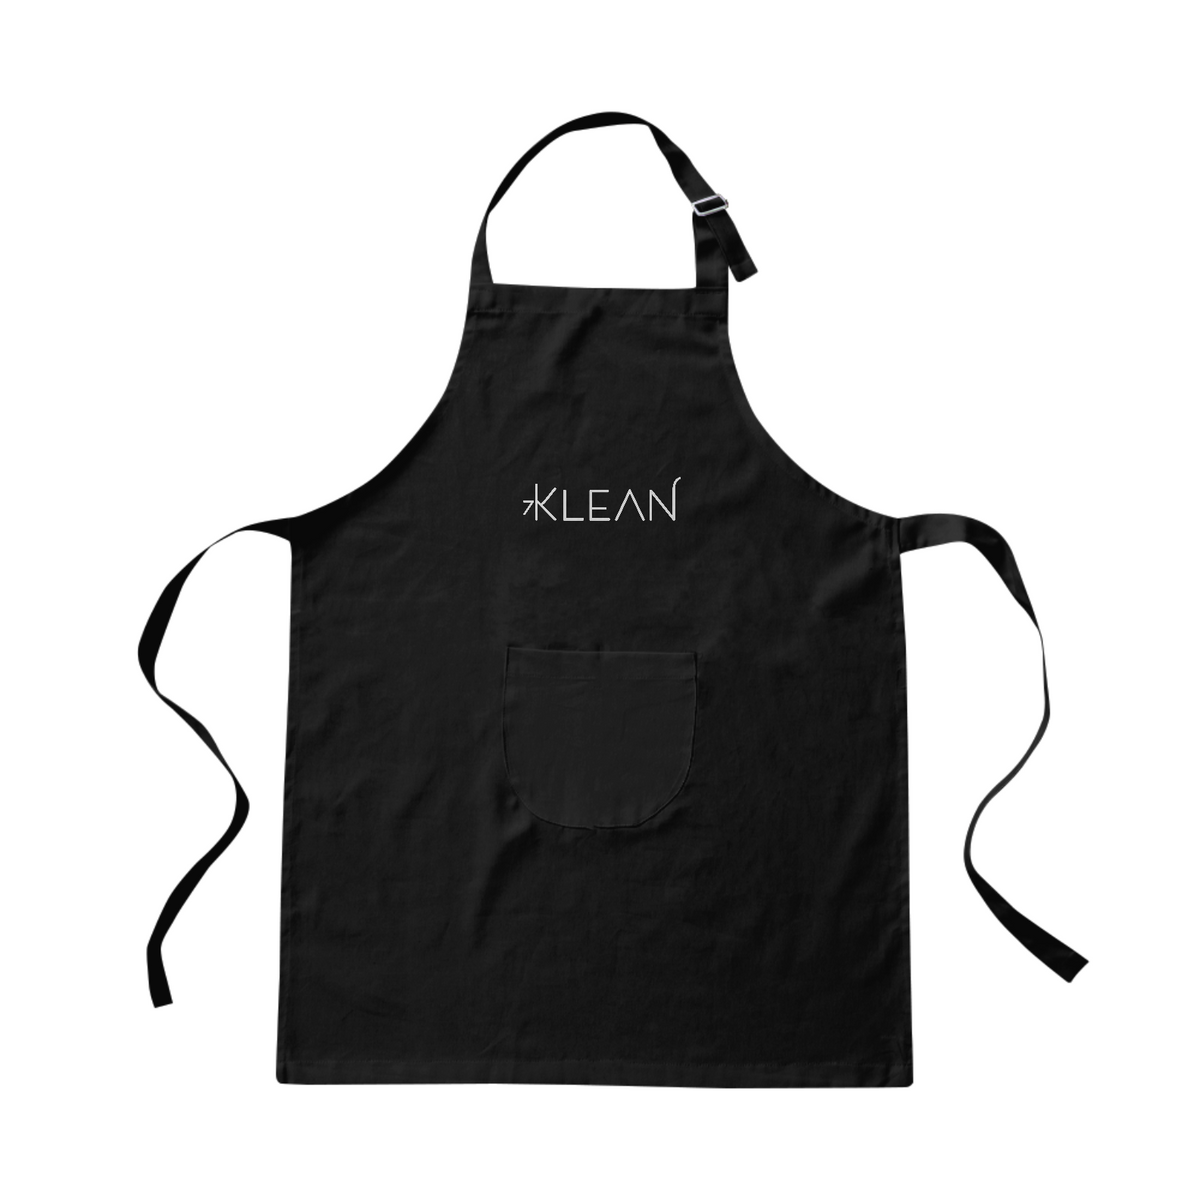 Nome do produto: Klean | Avental